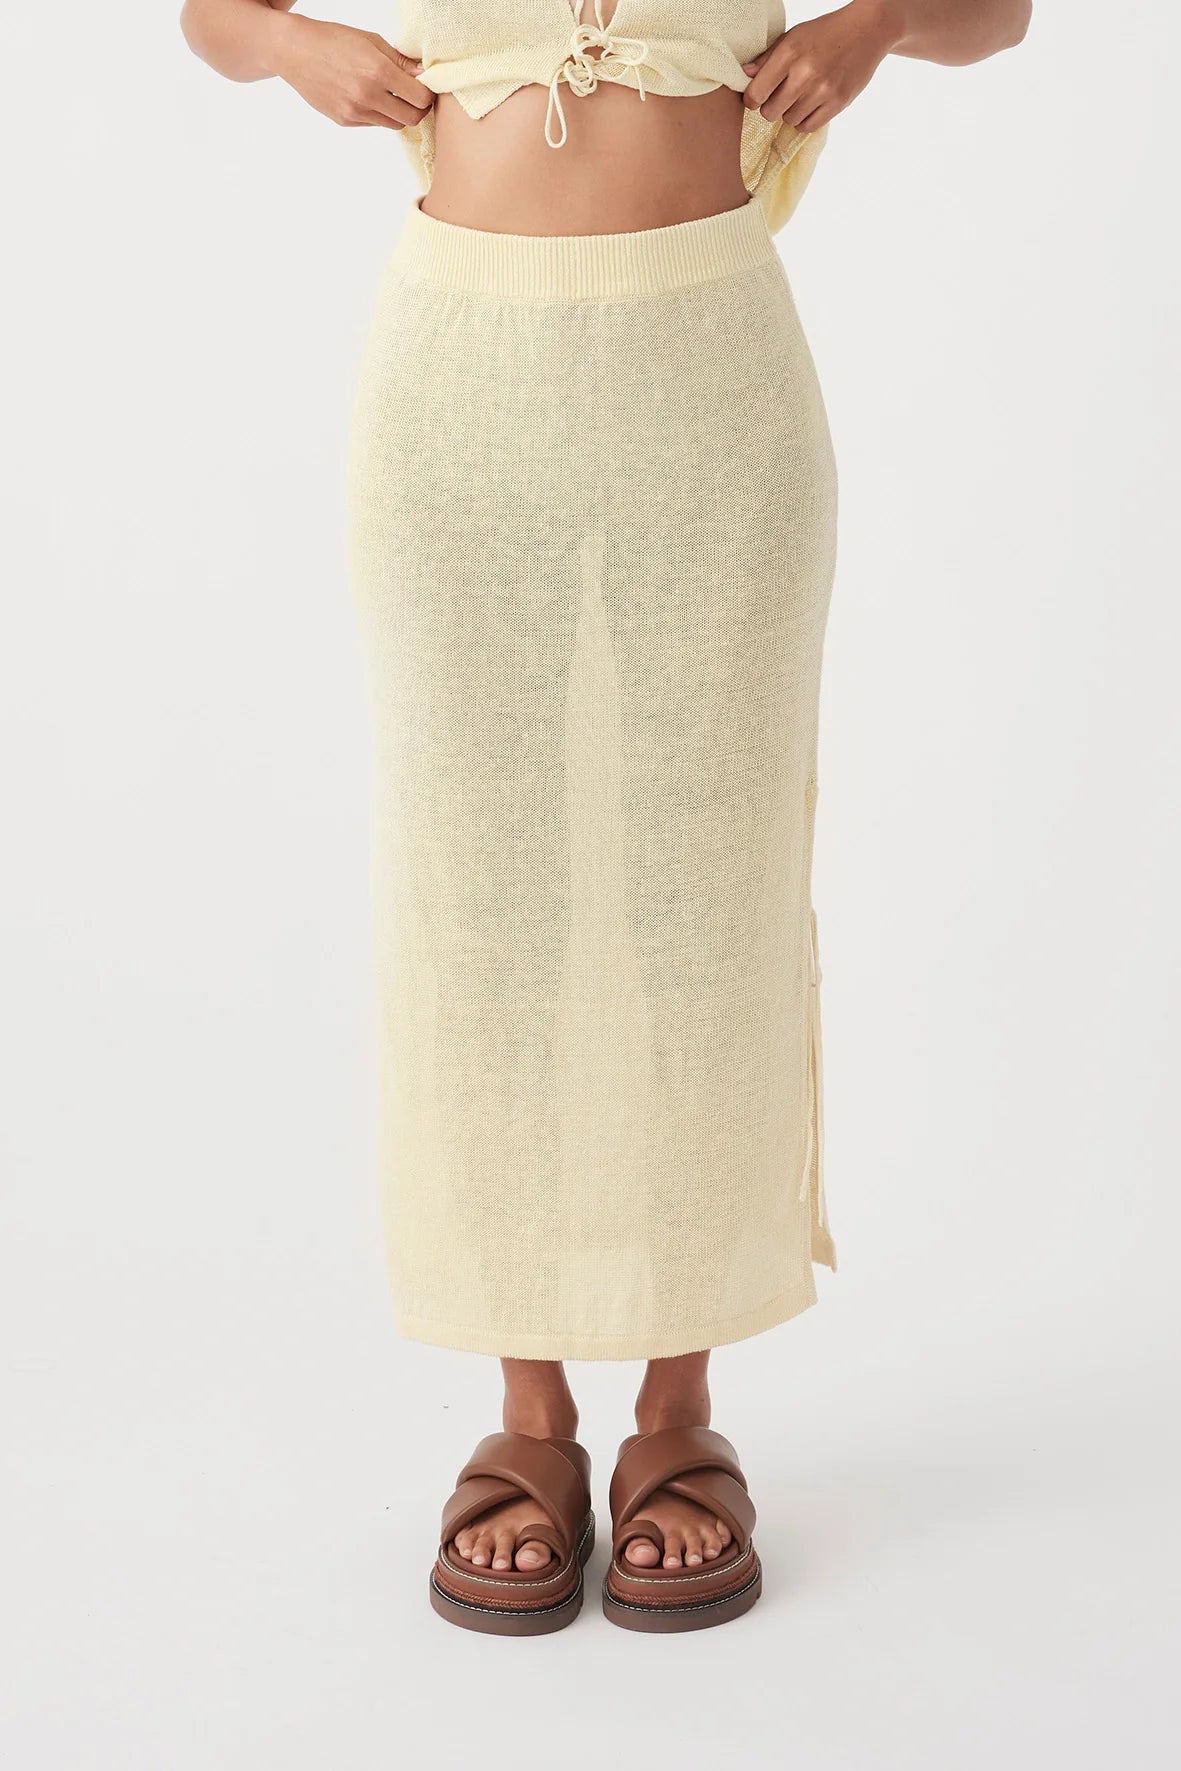 Pearla Skirt - Butter